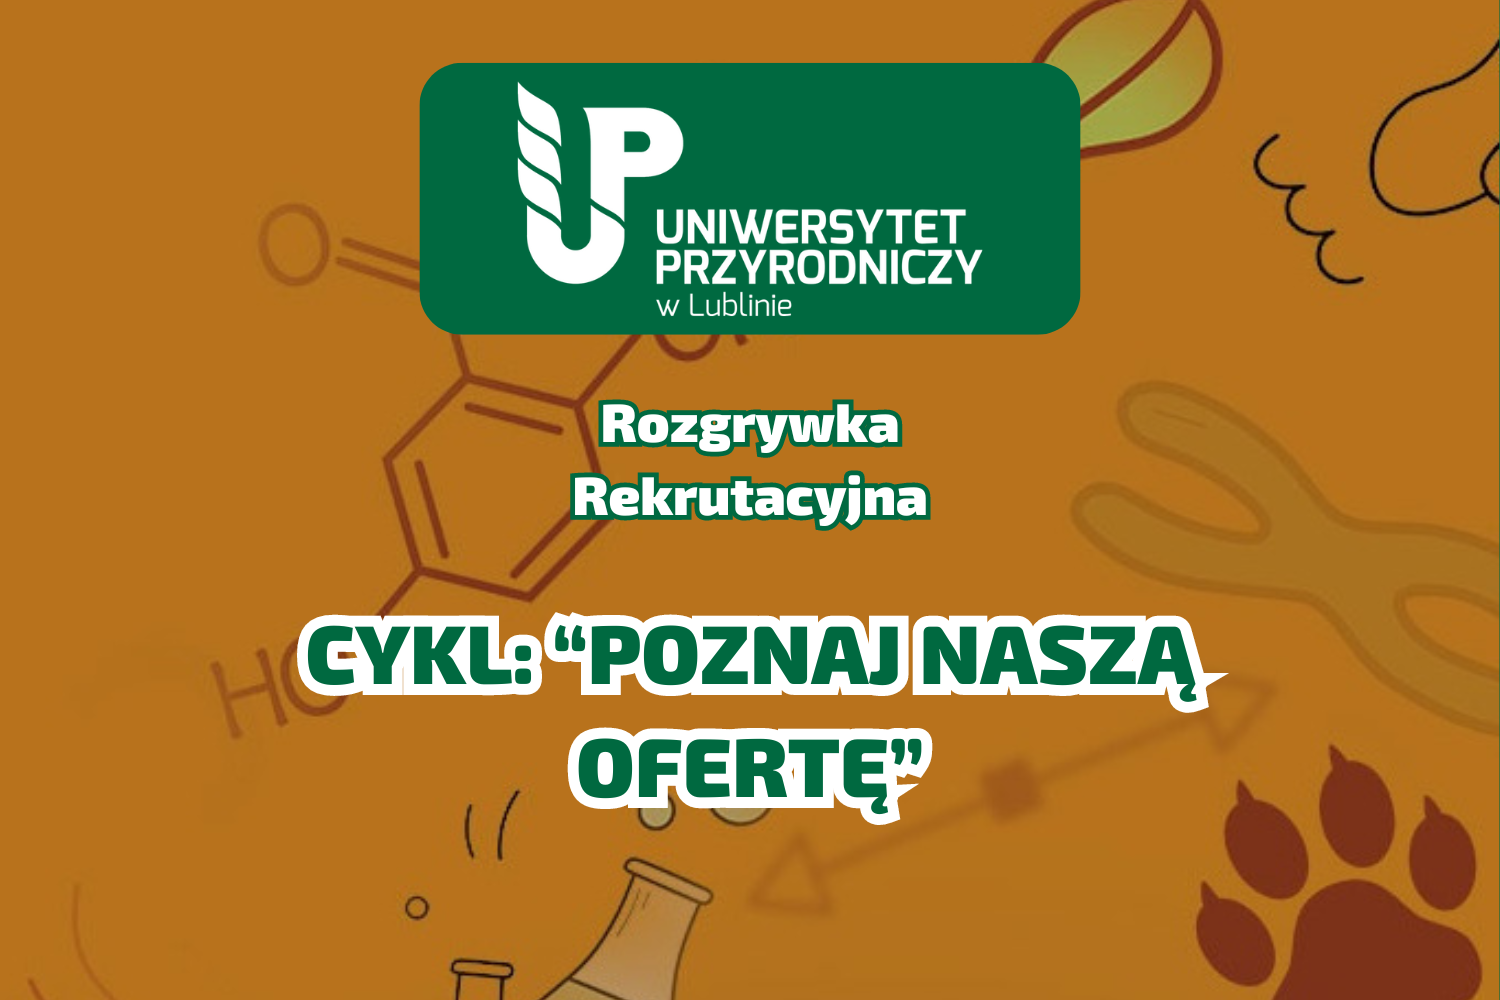 pomarańczowe tło z liśćmi, logo UP w Lublinie, napis "rozgrywka rekrutacyjna", pod spodem napis "Cykl: Poznaj naszą ofertę"